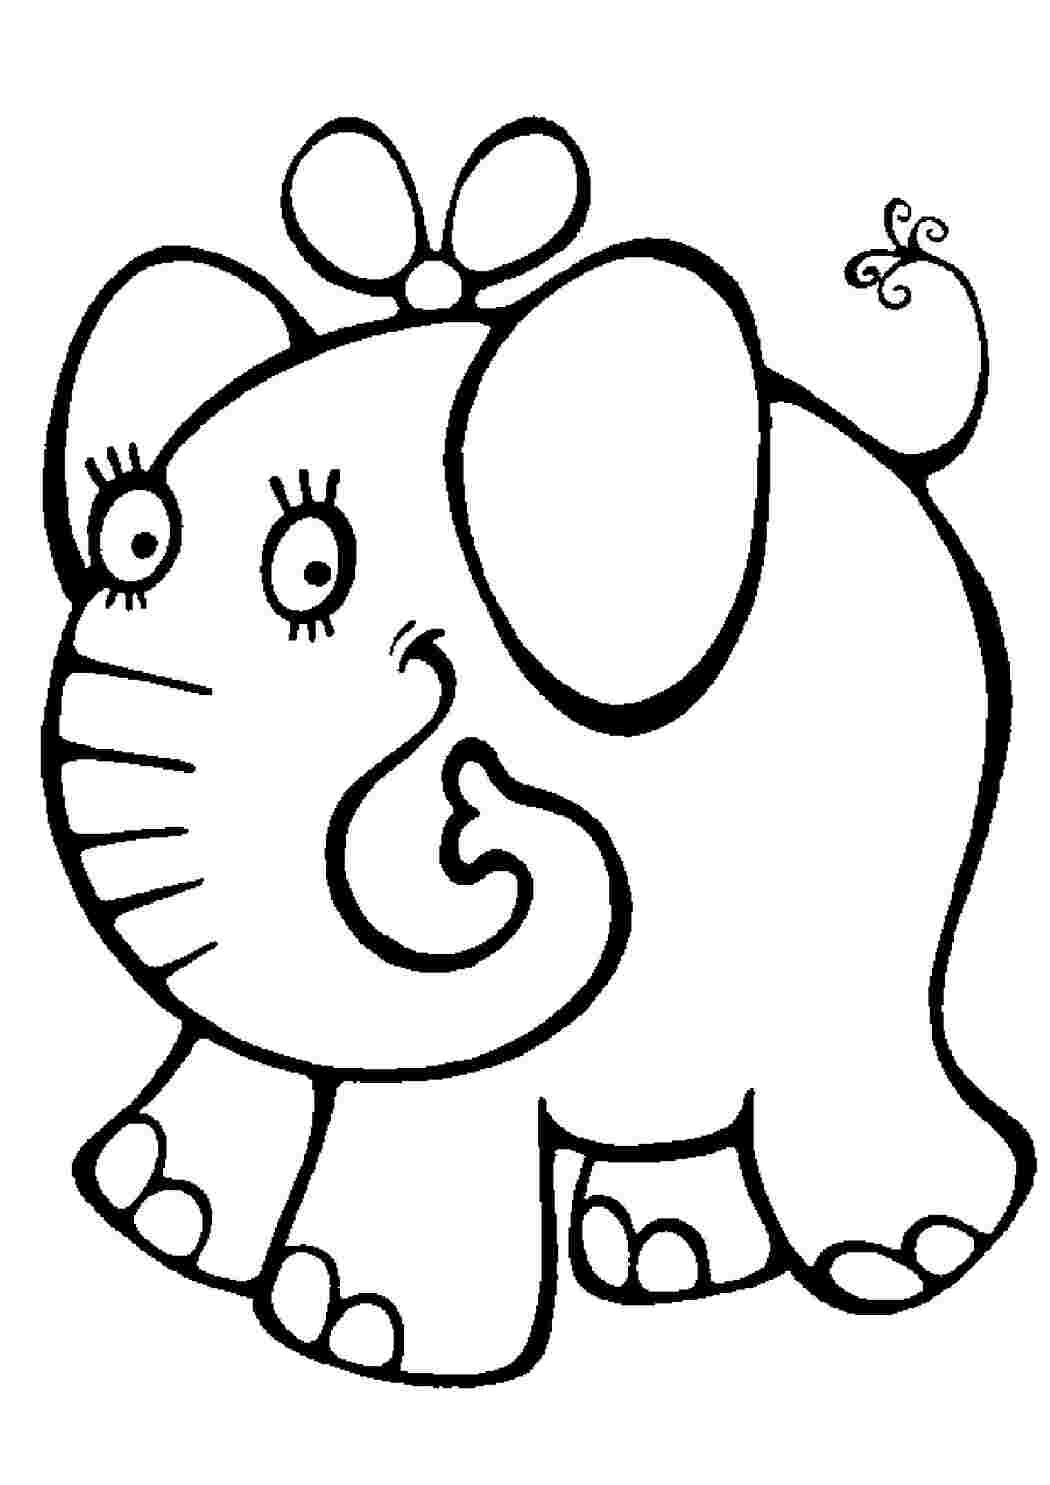 Раскраски Раскраски для детей 2-4 года, слоник с бантиком Раскраски для детей 2-4 года, слоник с бантиком  Раскраски скачать онлайн